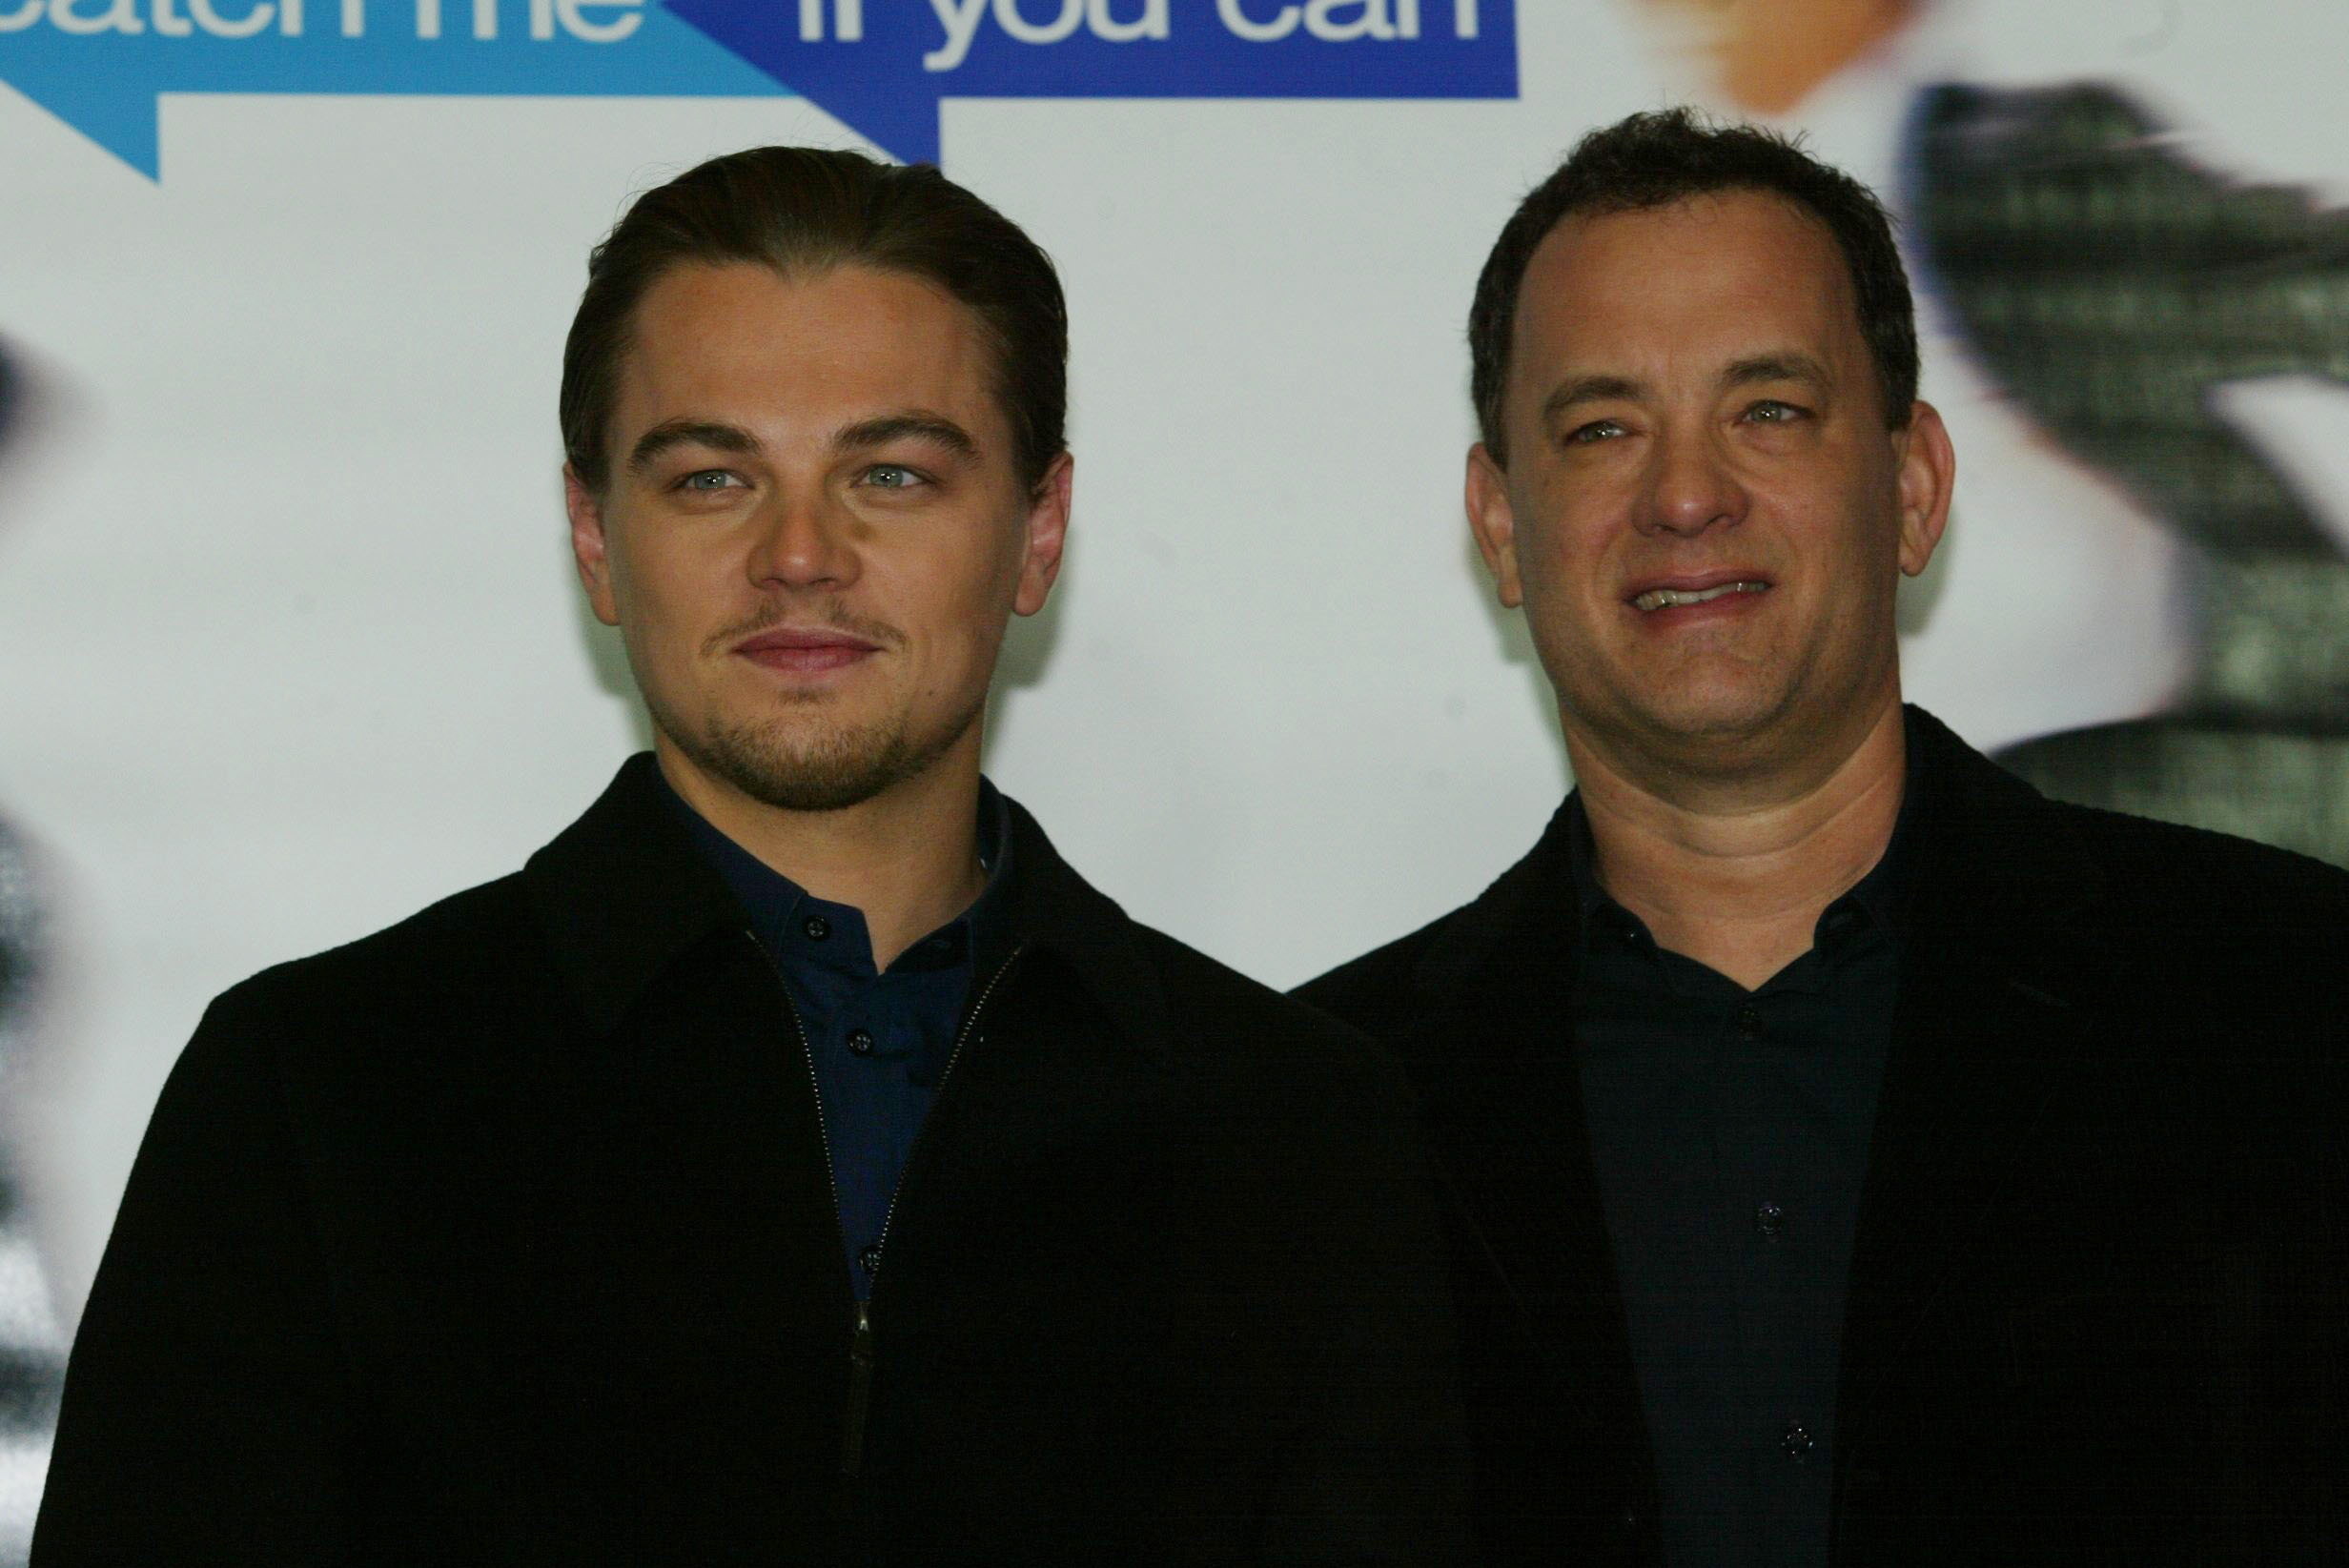 Tom Hanks and Leonardo DiCaprio